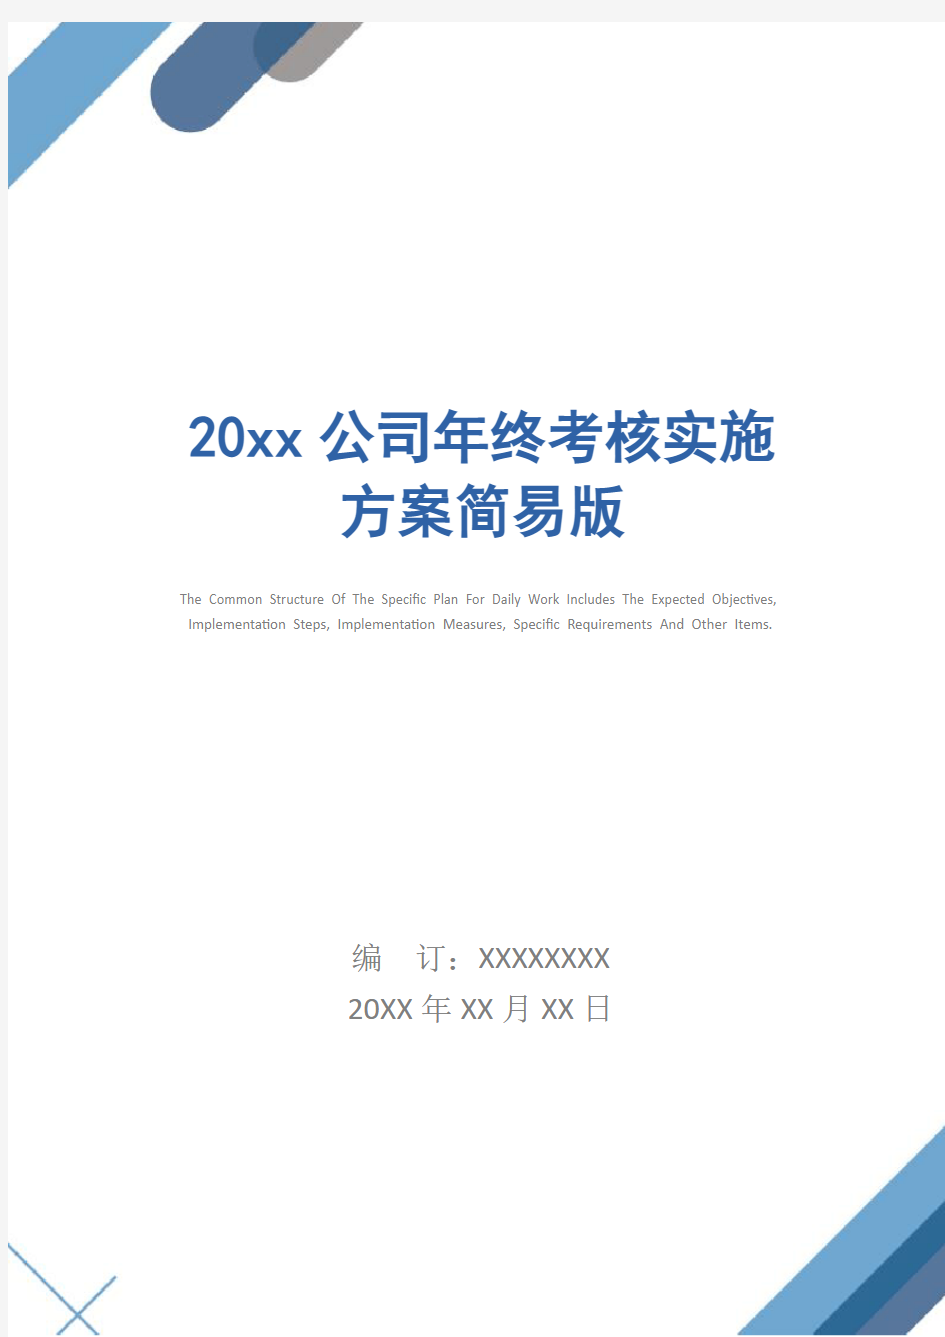 20xx公司年终考核实施方案简易版